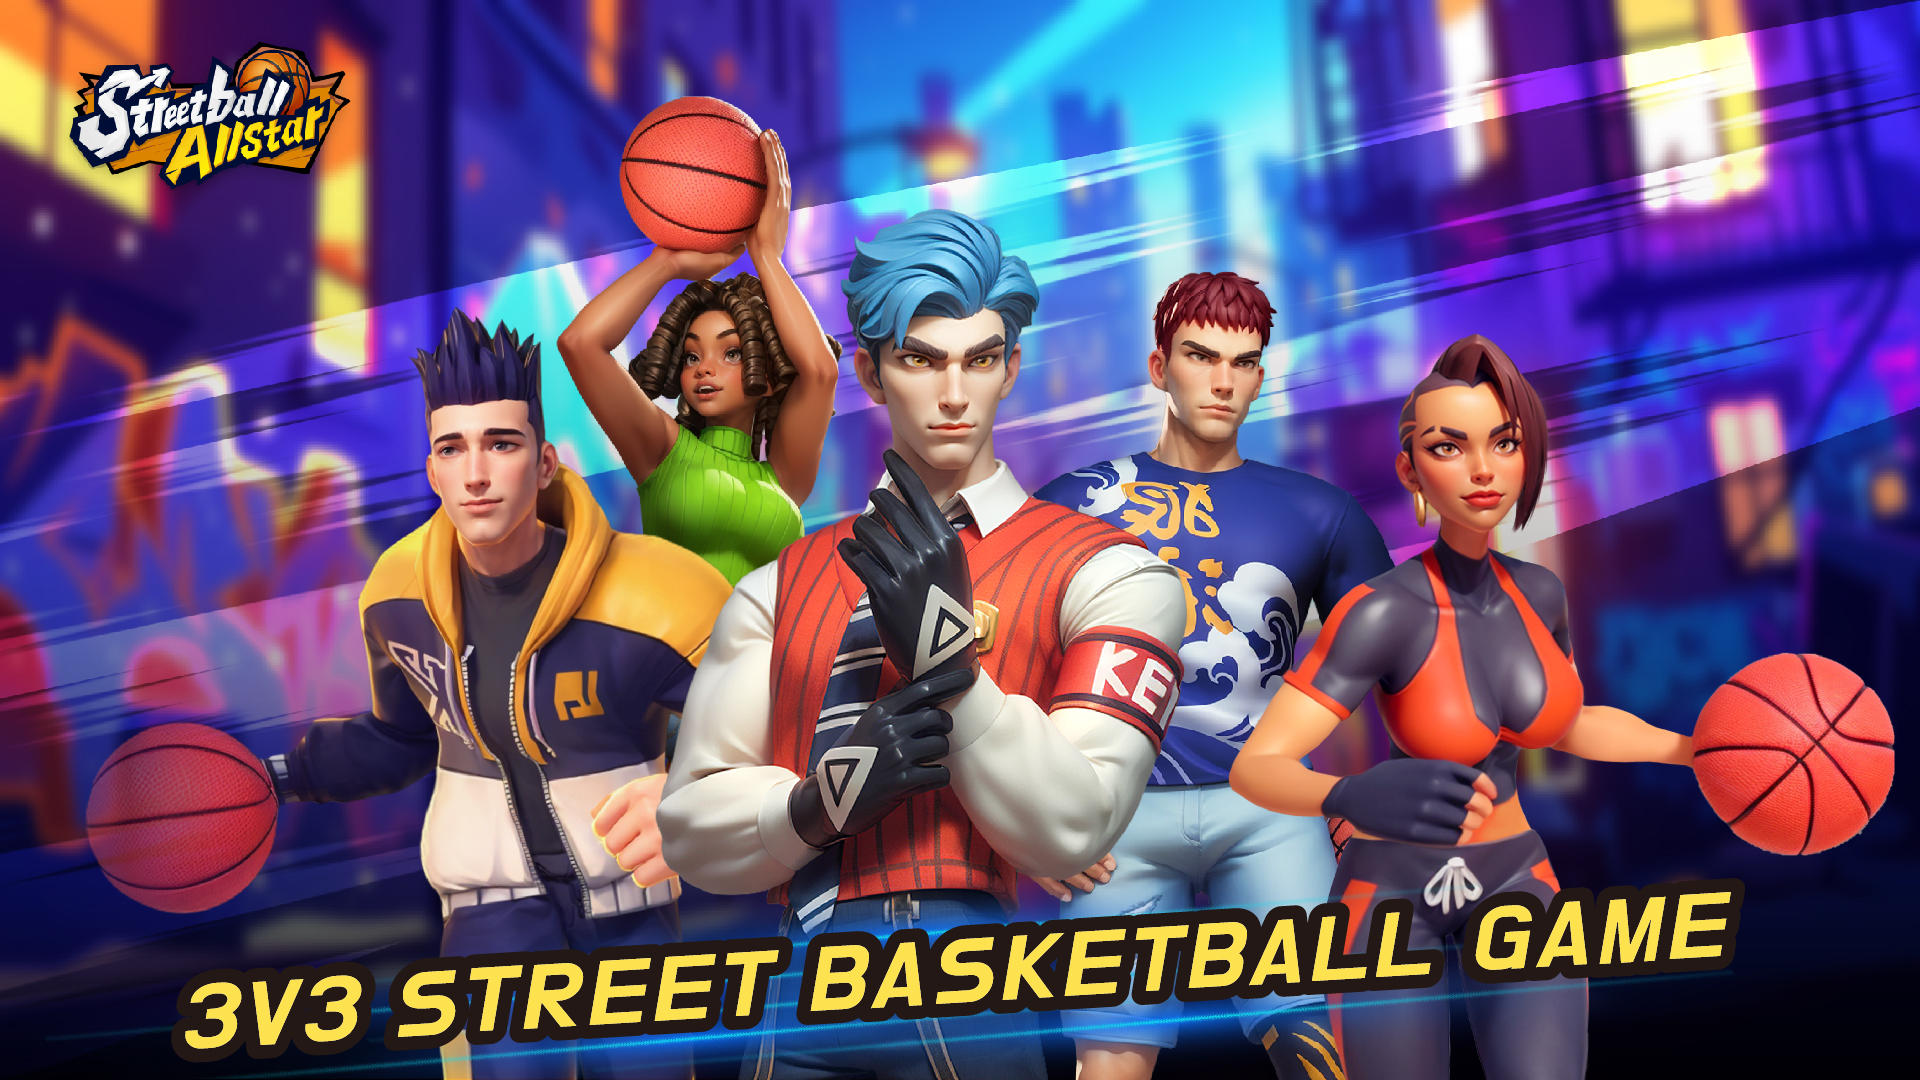 Screenshot 1 of Streetball Allstar 